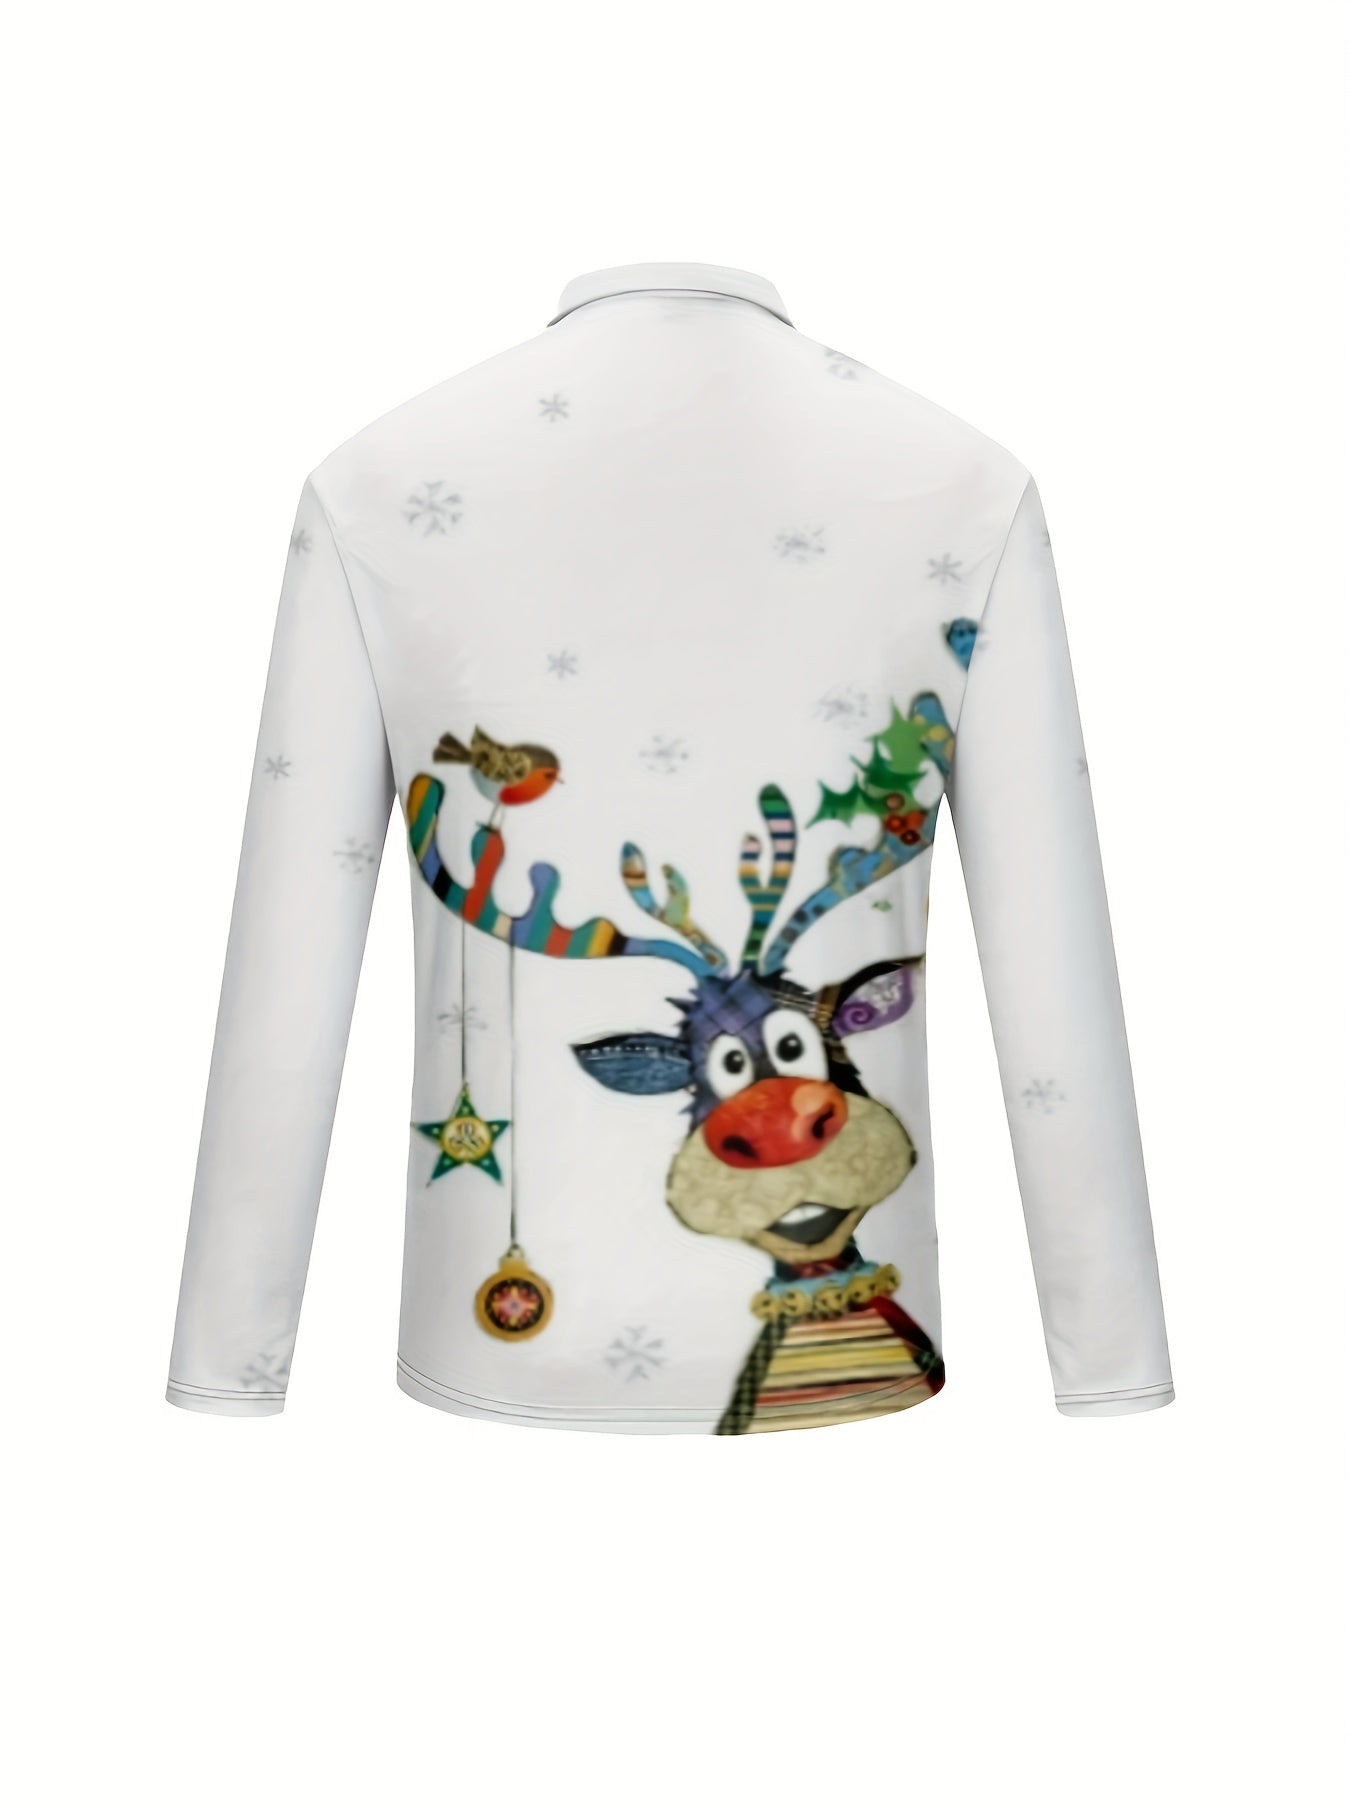 Cartoon Christmas Deer 3D Print, Men's Trendy Long Sleeve Zipper Shirt, Gift For Men